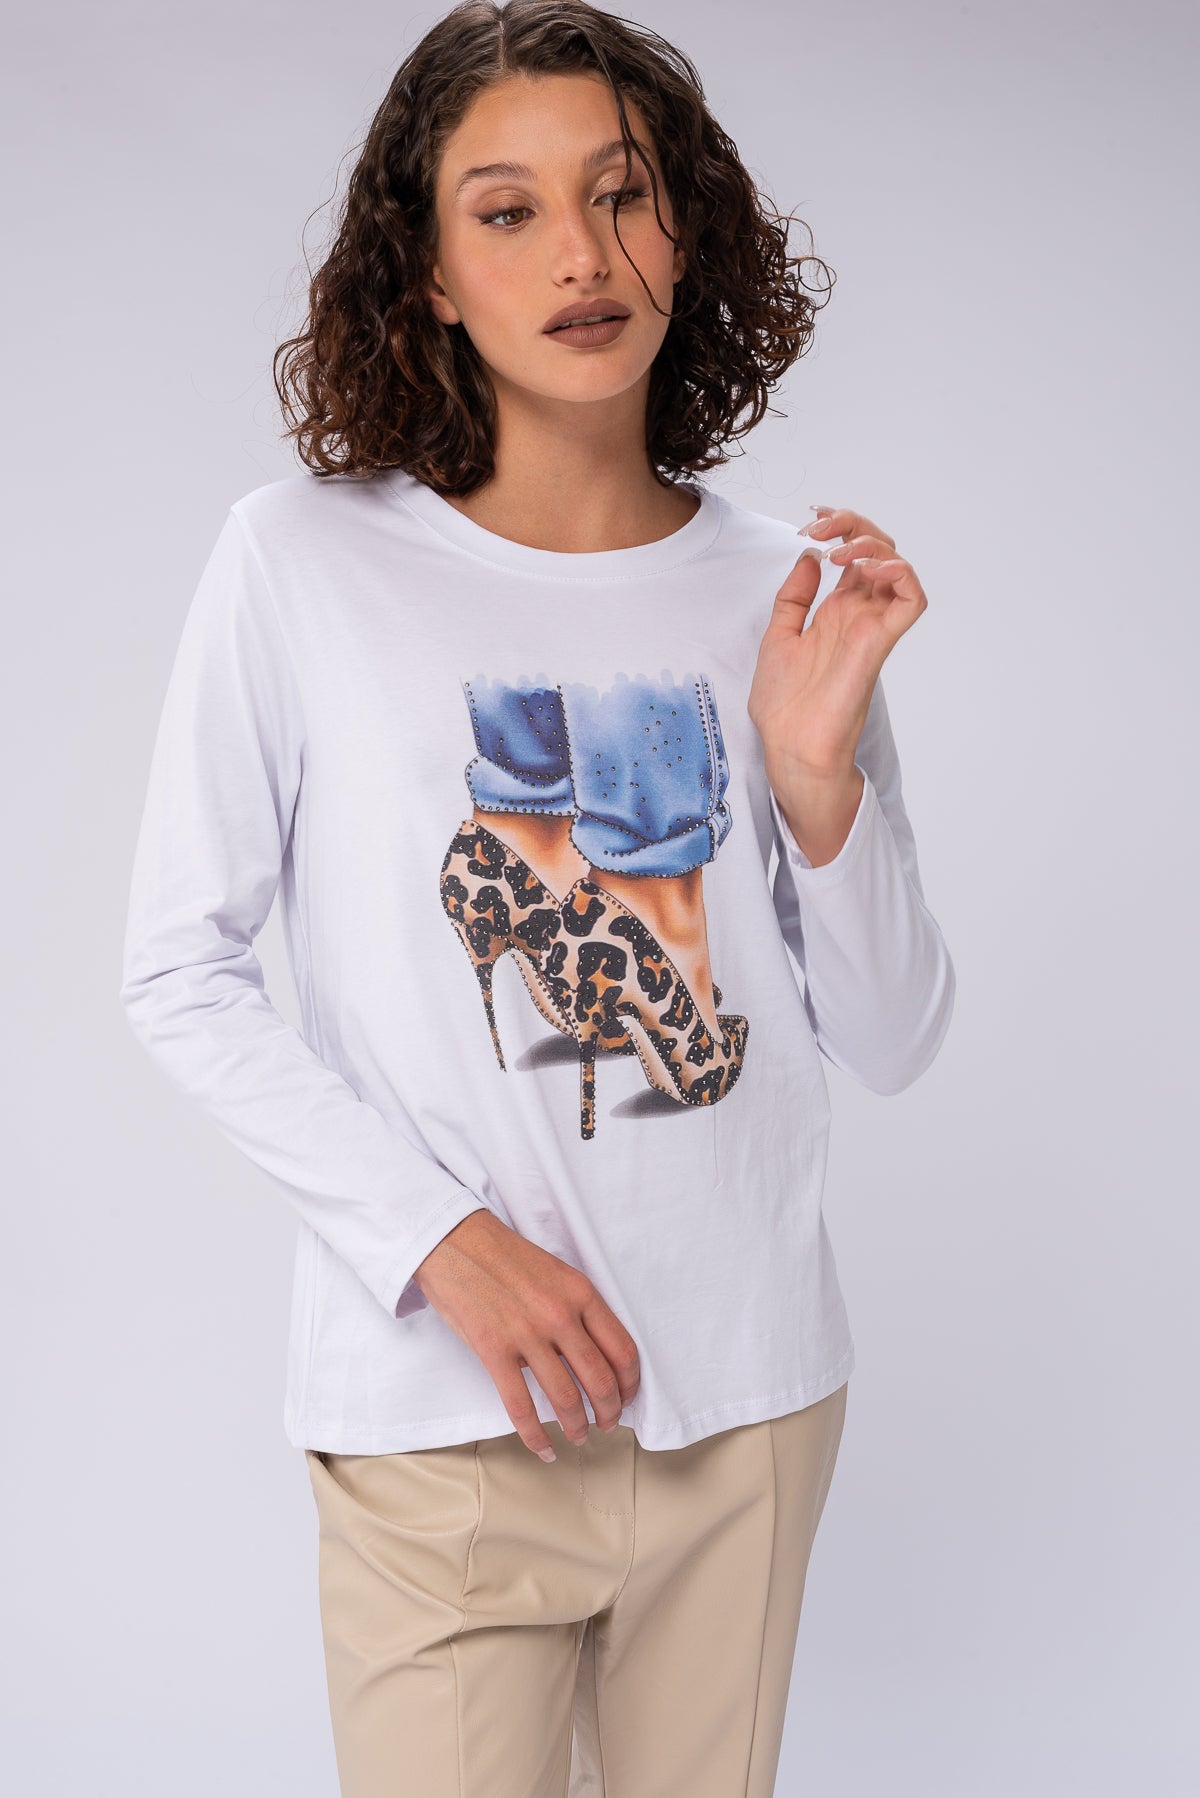 Remera Style (blanca) | Blusas, Camisas y Remeras | Viviana Méndez - Remera Style (blanca) - Viviana Méndez